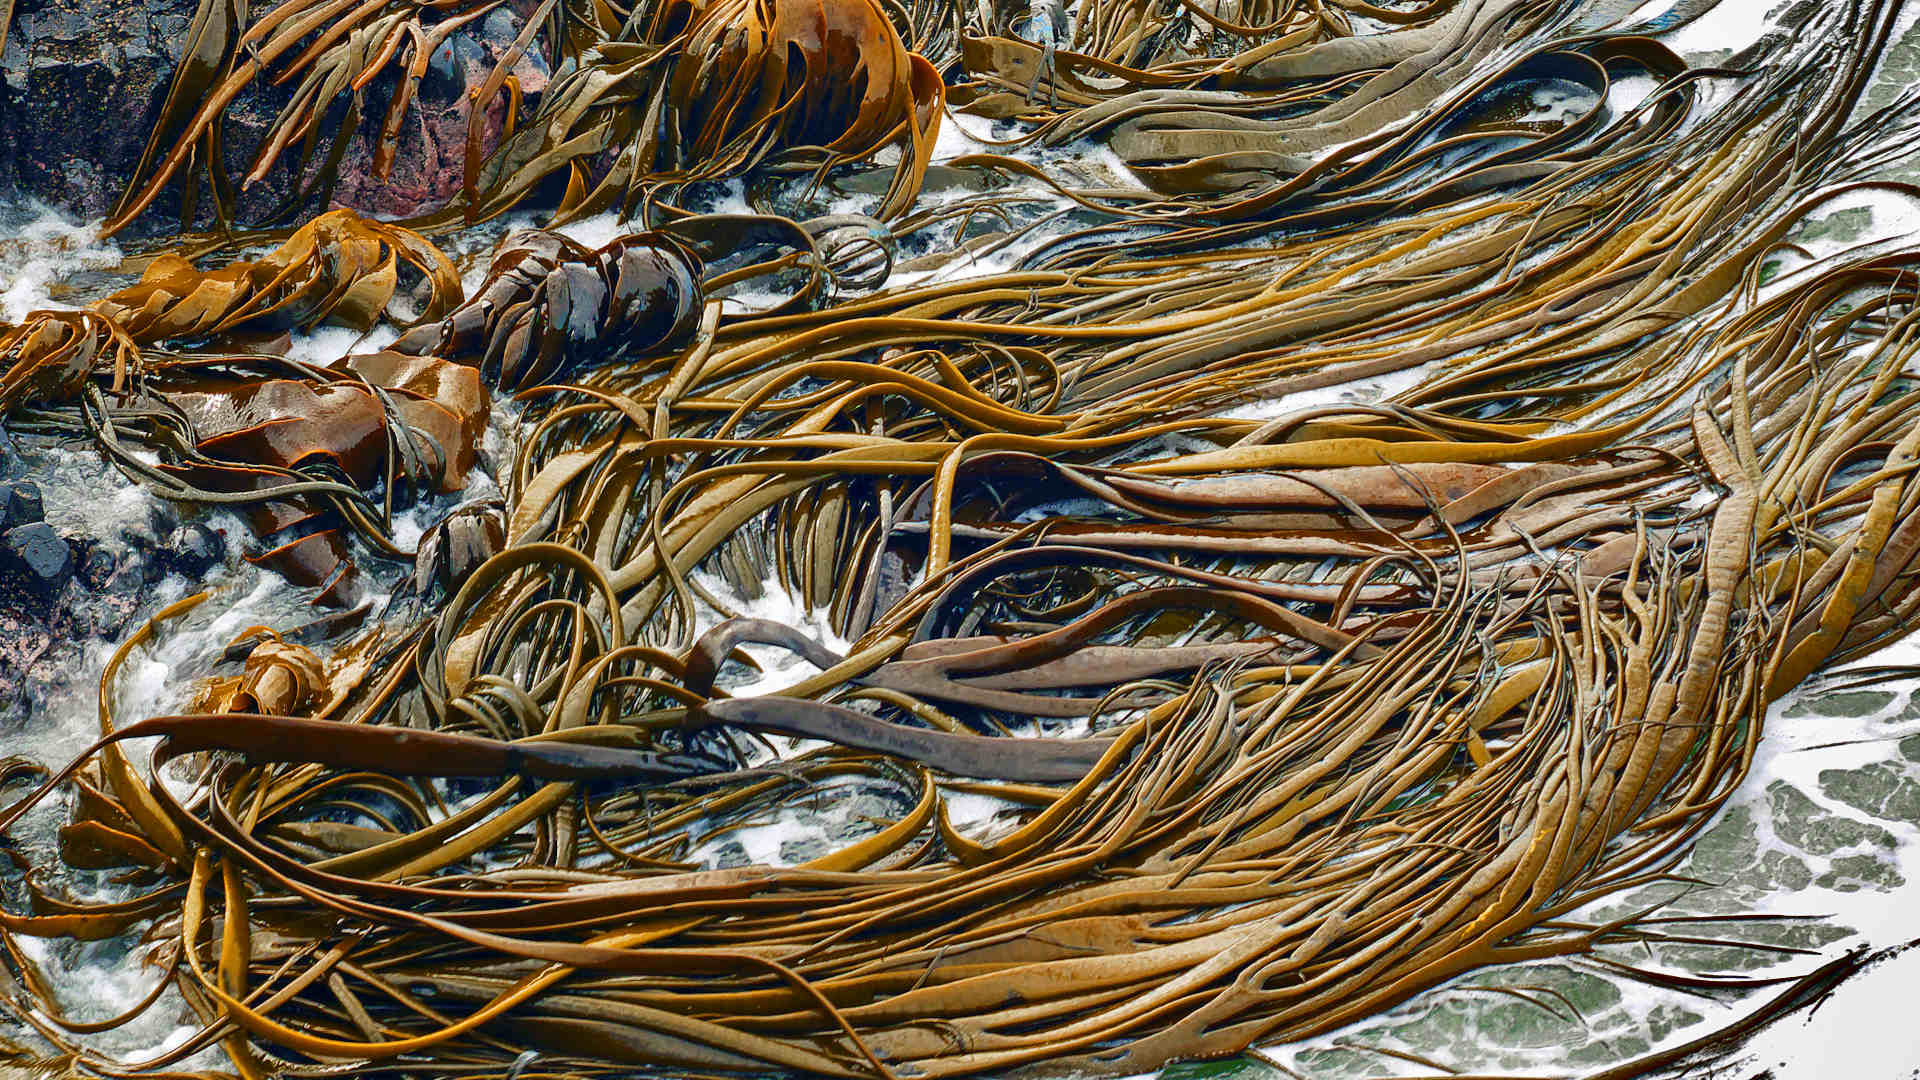 Ropes of kelp floating in the ocean